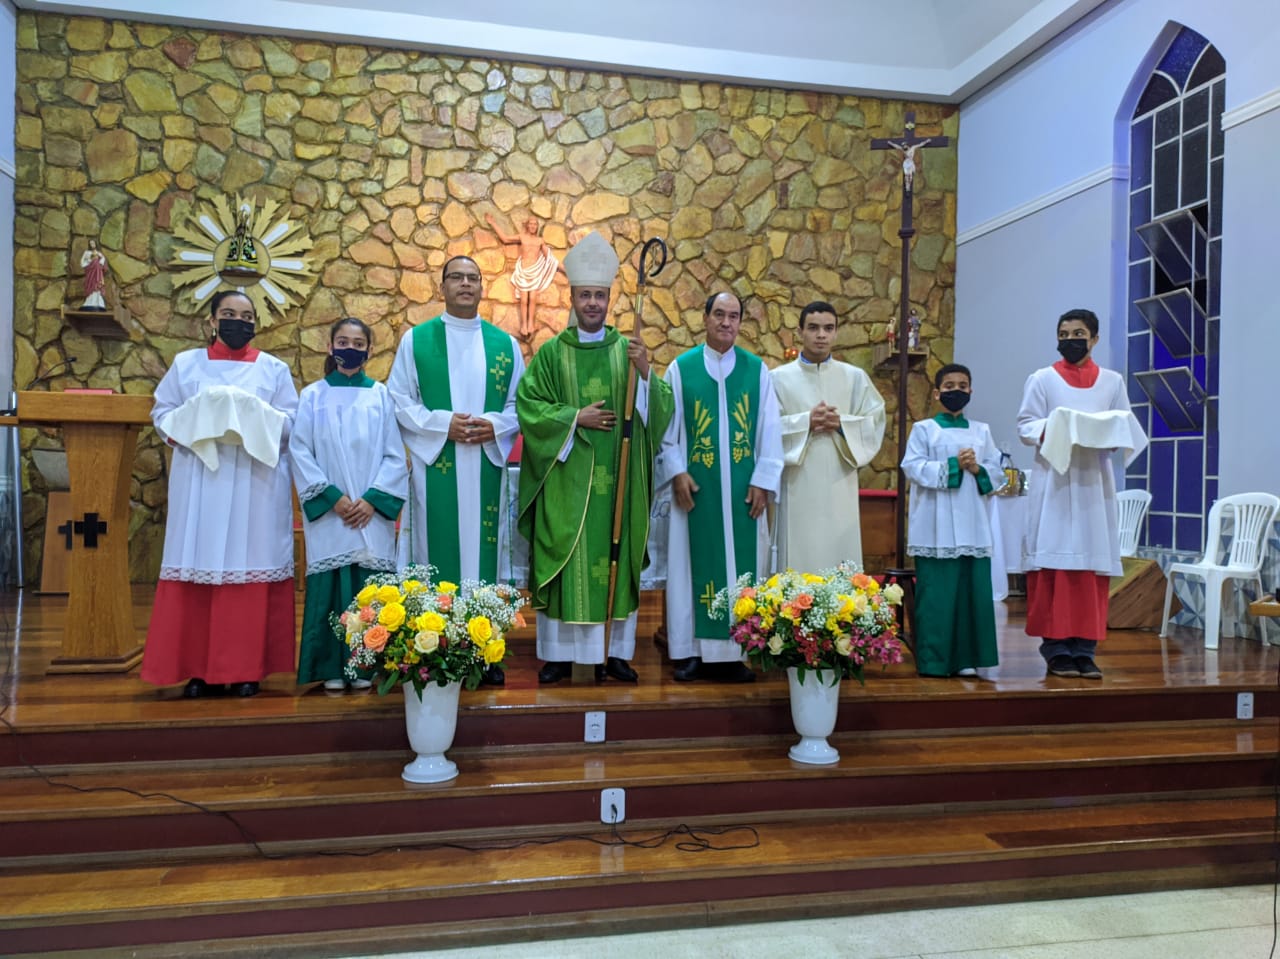 Dom Geovane preside Santa Missa pelo início do Ministério Pastoral de padre Ademar Toledo, em Nova União